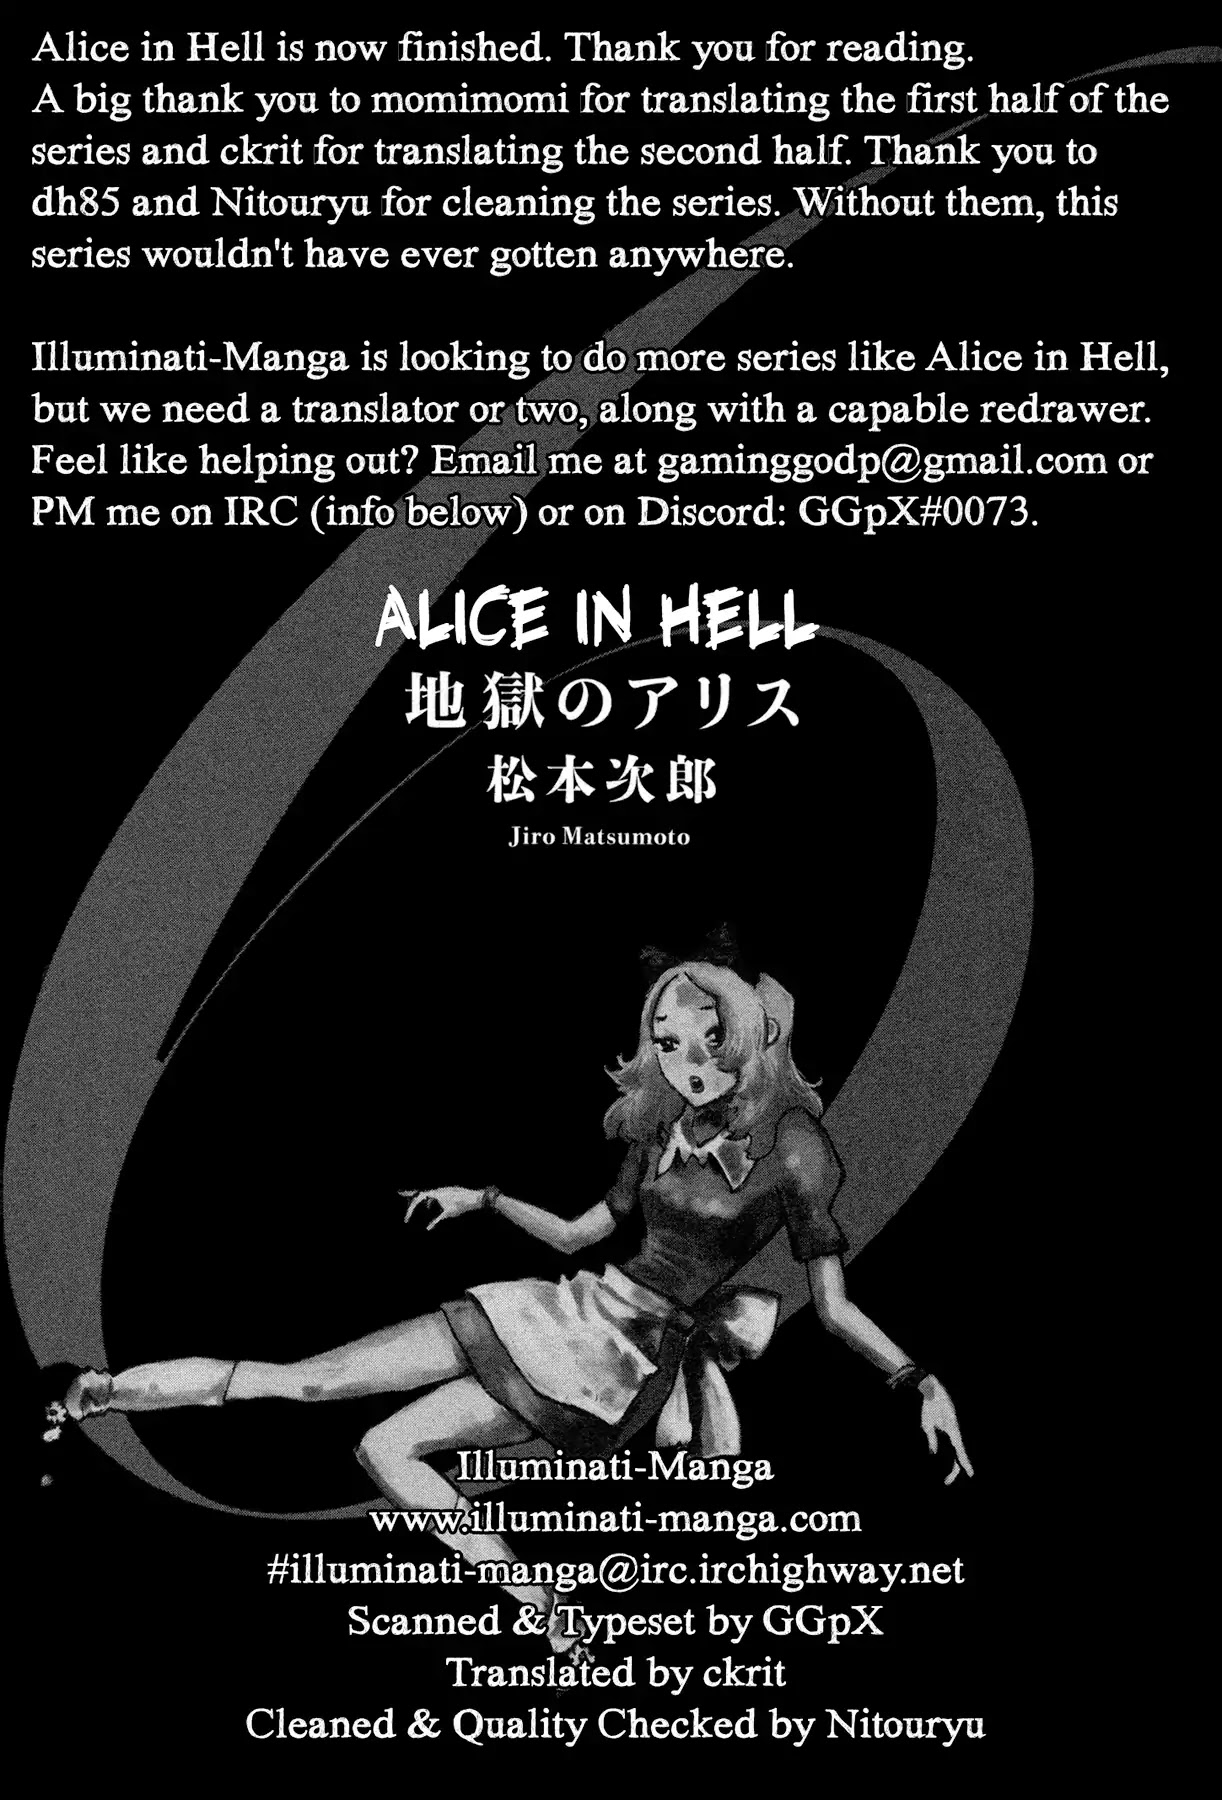 Jigoku no Alice Chapter 43: Damn Idiots! [END]